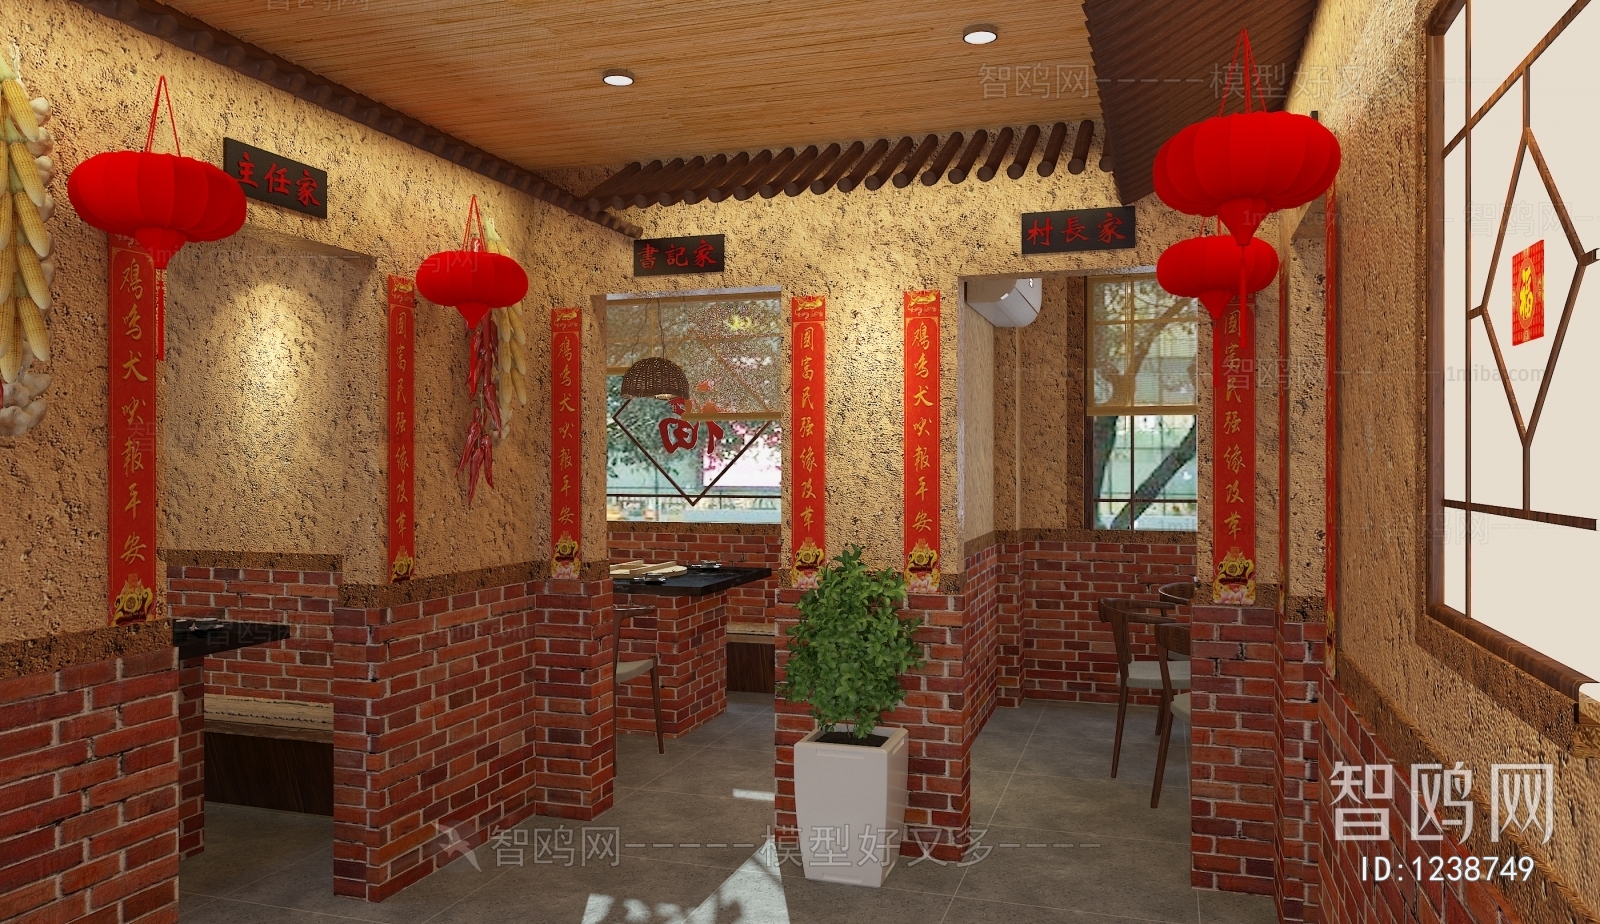 Chinese Style Restaurant Box